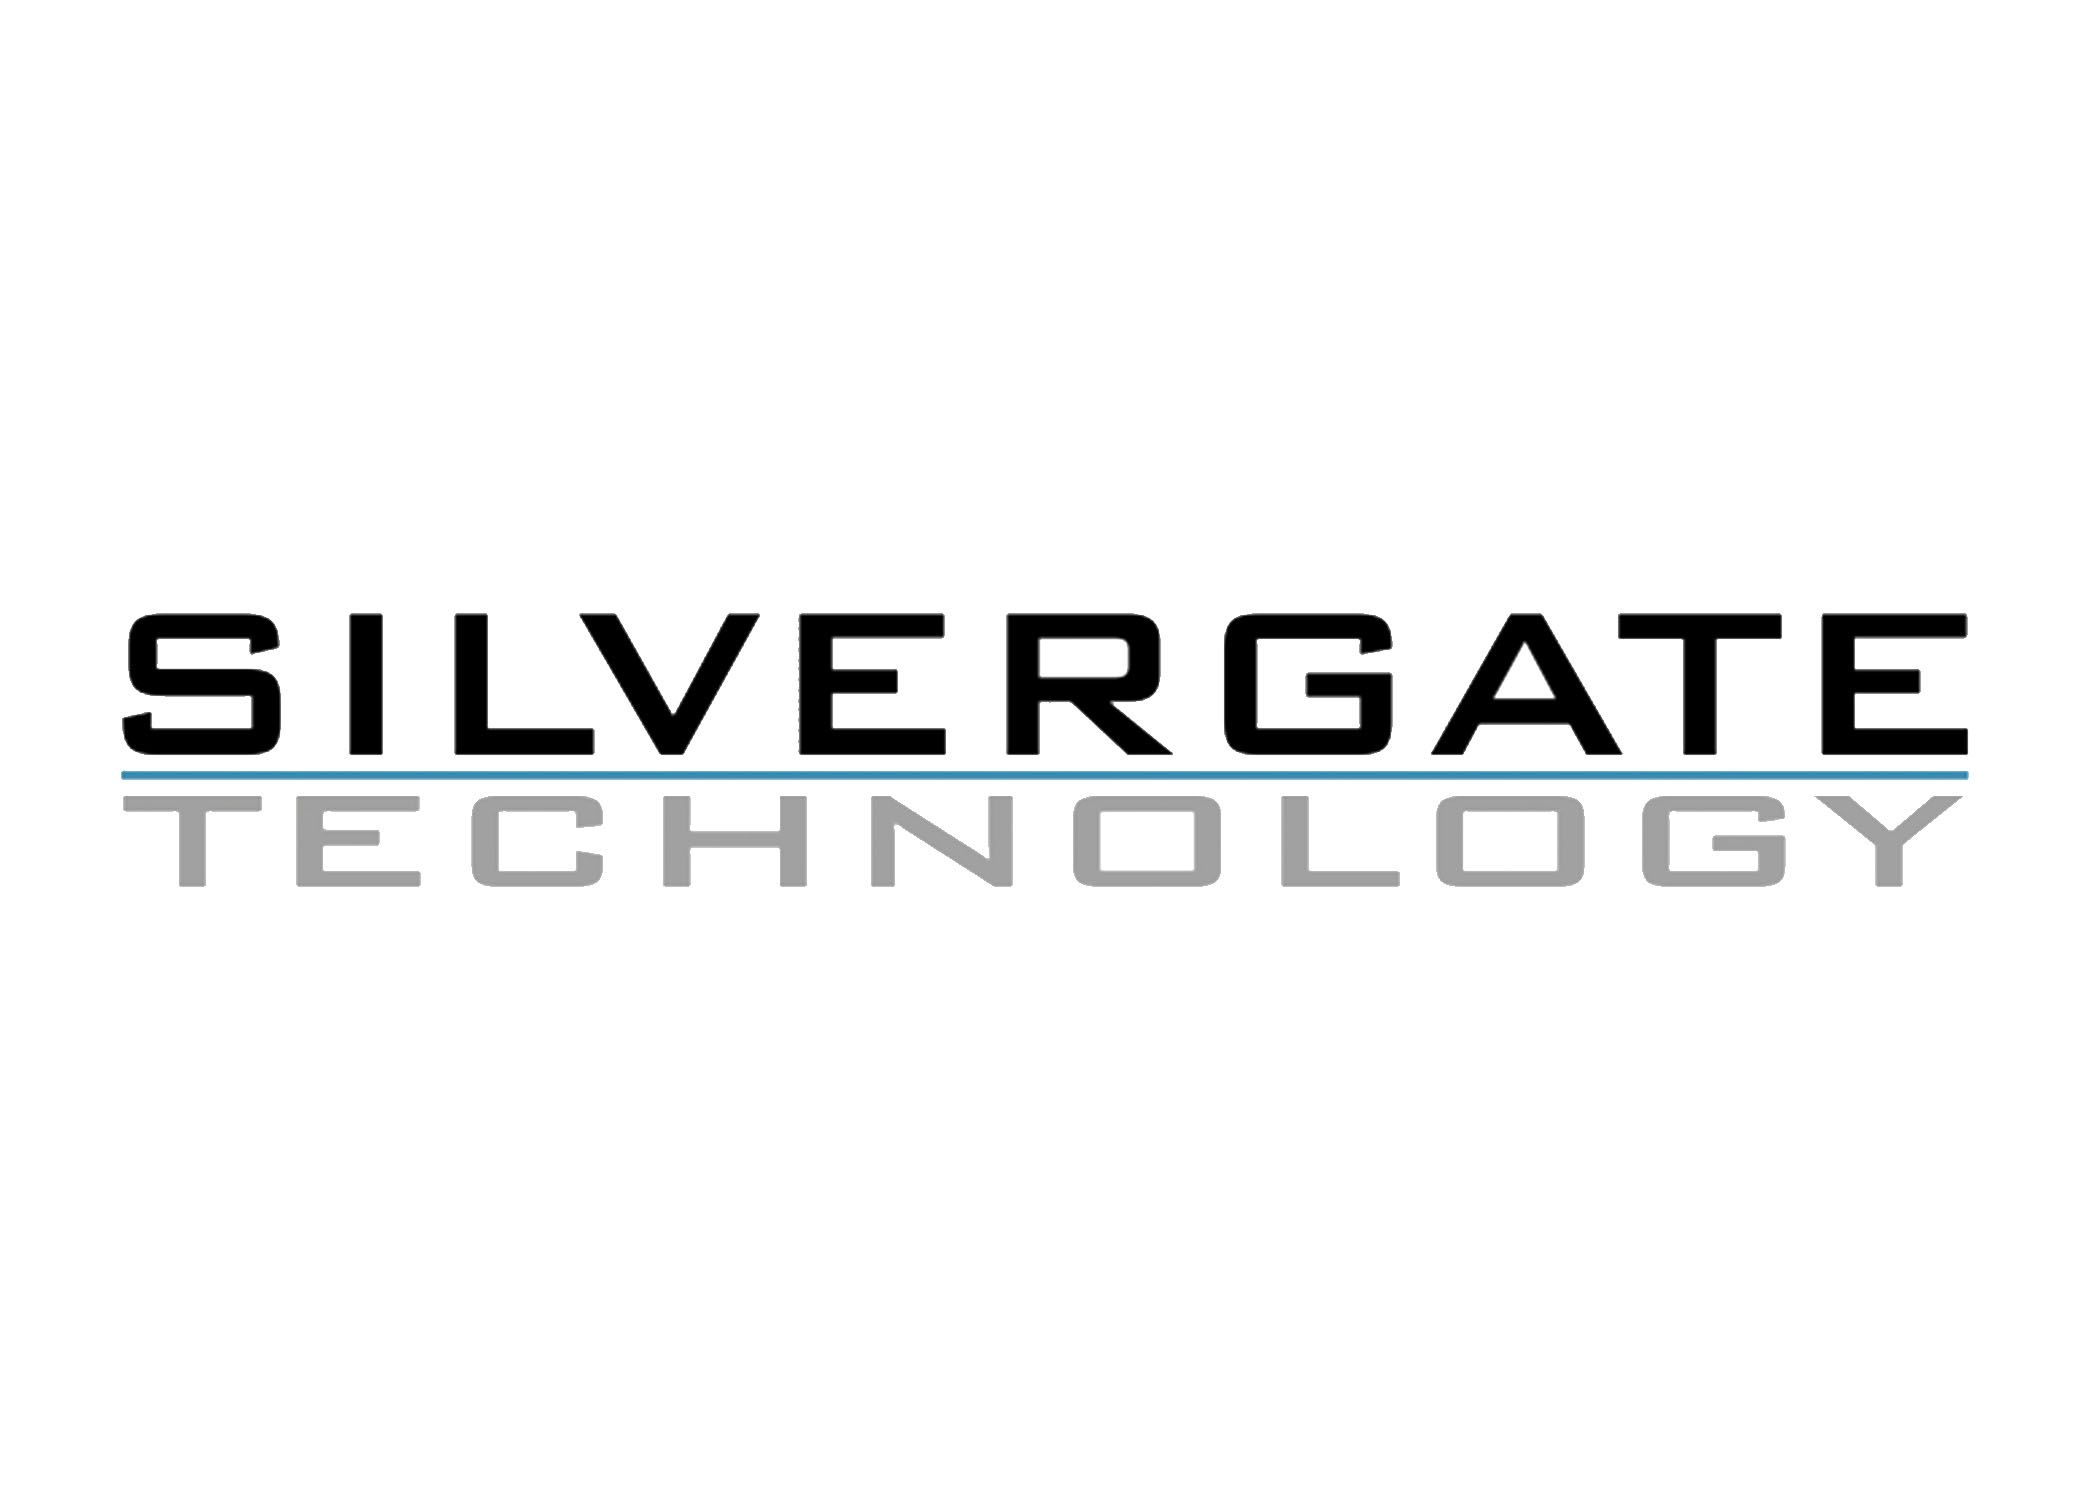 Silvergate Technology